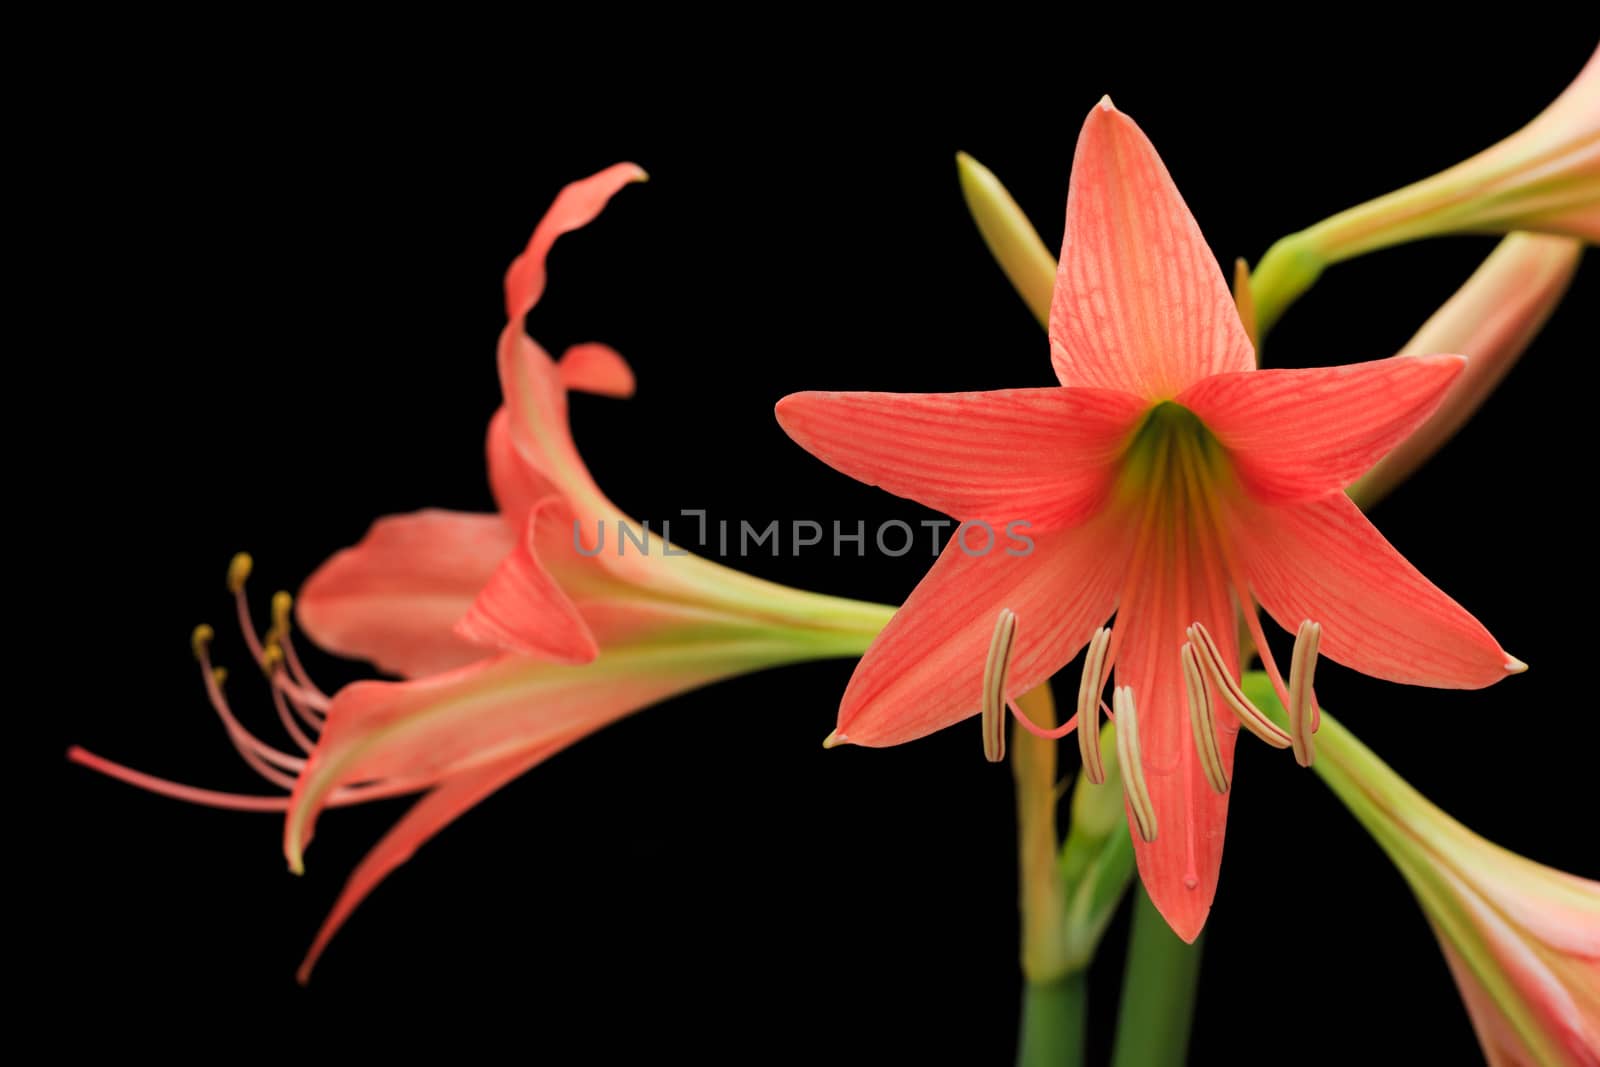 amaryllis flower by AEyZRiO